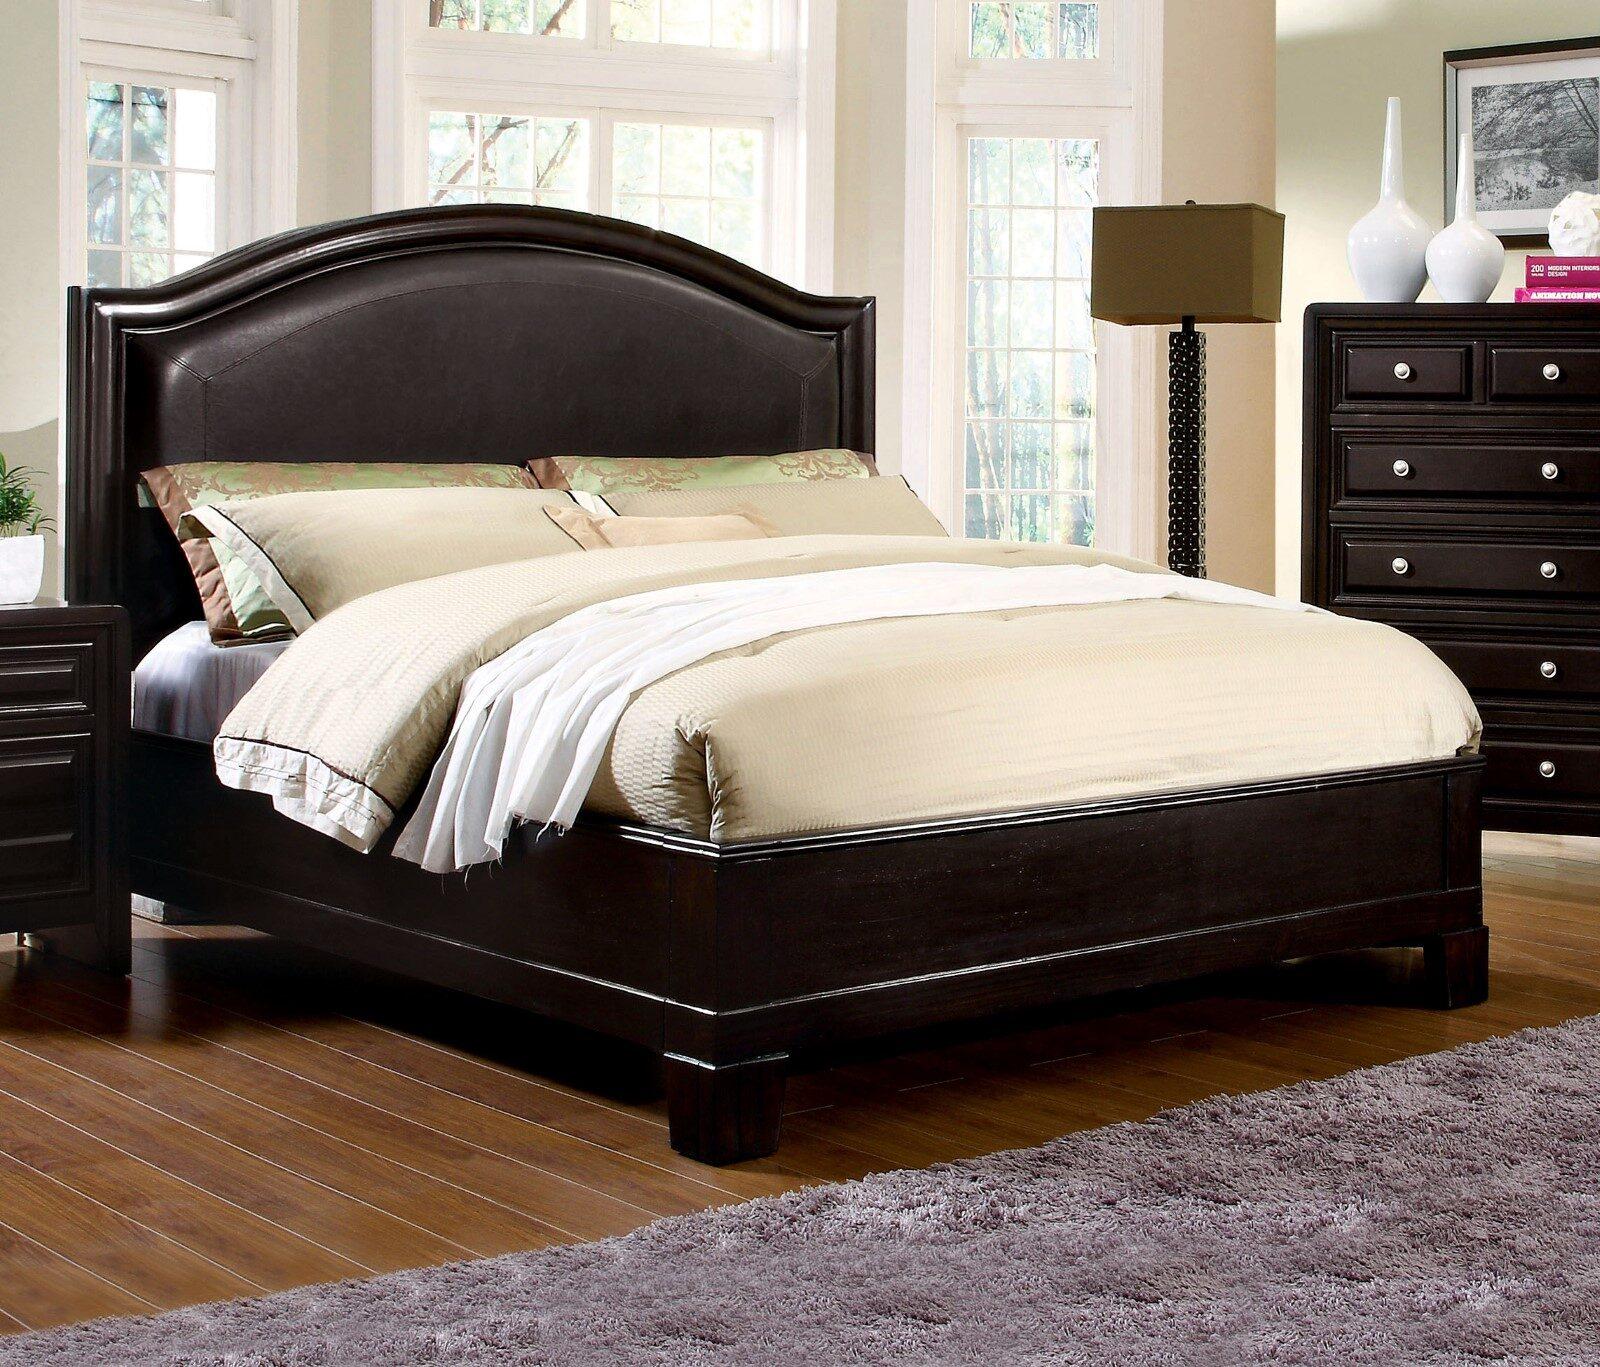 

    
Transitional Espresso Solid Wood King Bedroom Set 6pcs Furniture of America CM7058-EK Winsor
